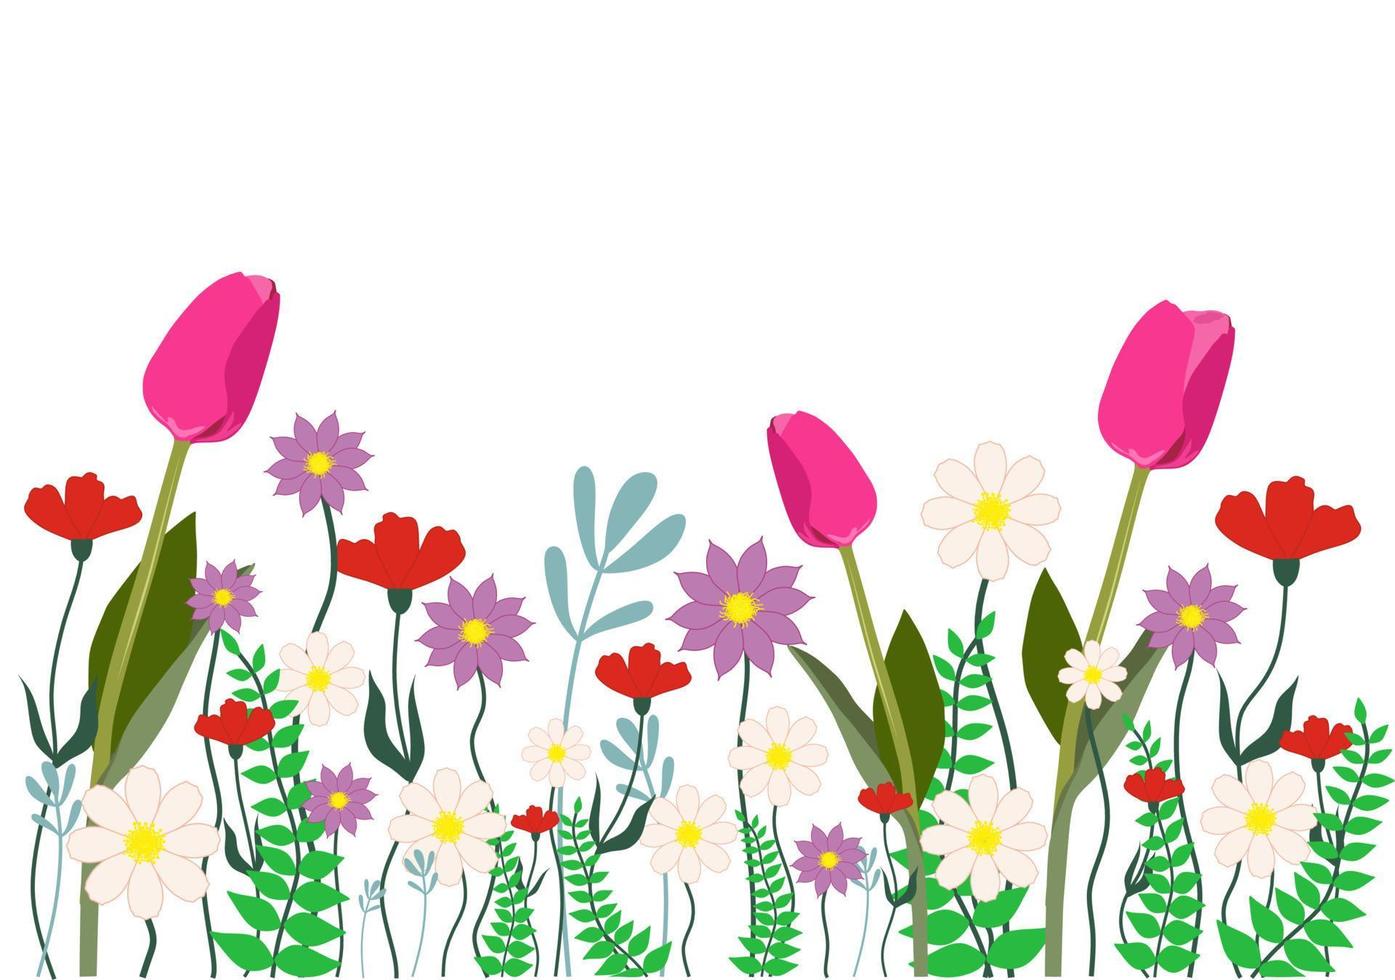 horizontaler weißer Hintergrund oder floraler Hintergrund, dekoriert mit wunderschönen mehrfarbigen blühenden Blumen und Blättern. Tulpe, Mohn, Kamille. frühling botanische flache vektorillustration auf weißer rückseite vektor